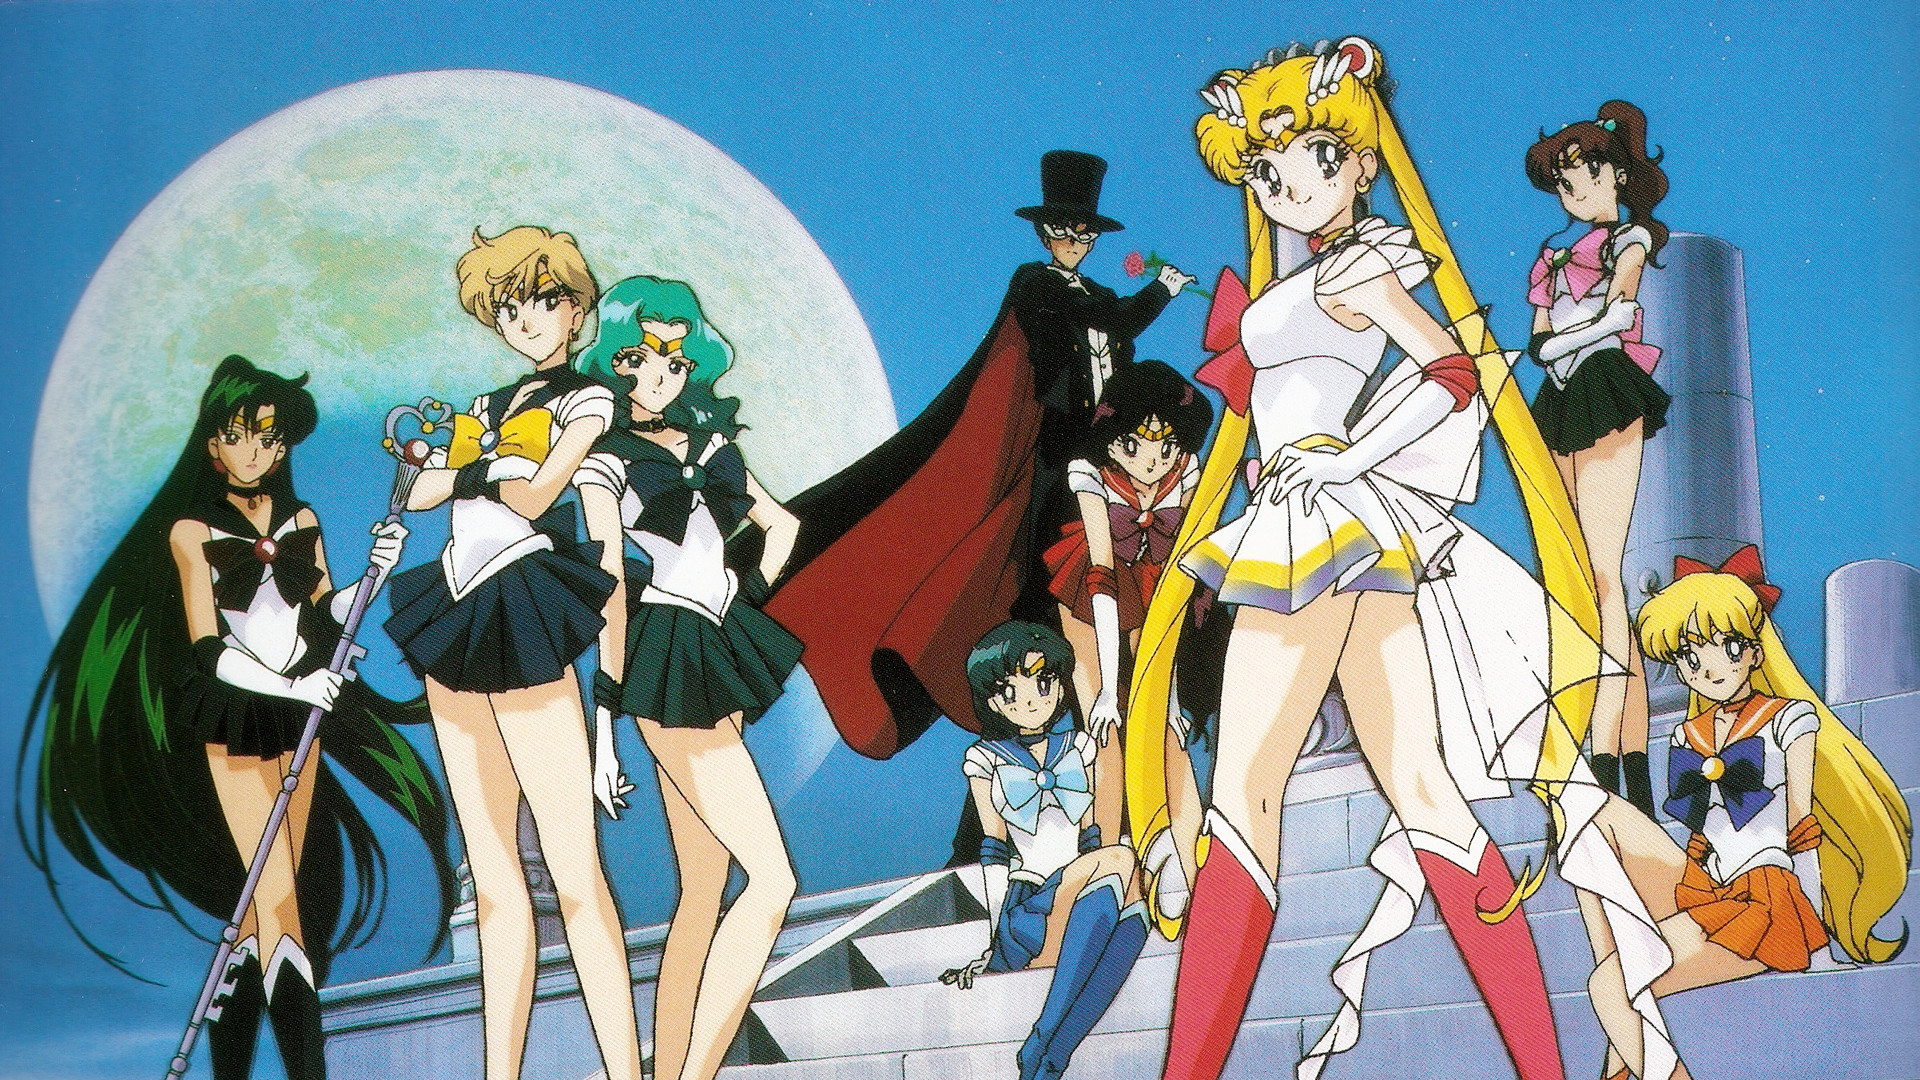 1920x1080 Sailor Moon background Â·â  Download free HD wallpapers for desktop .